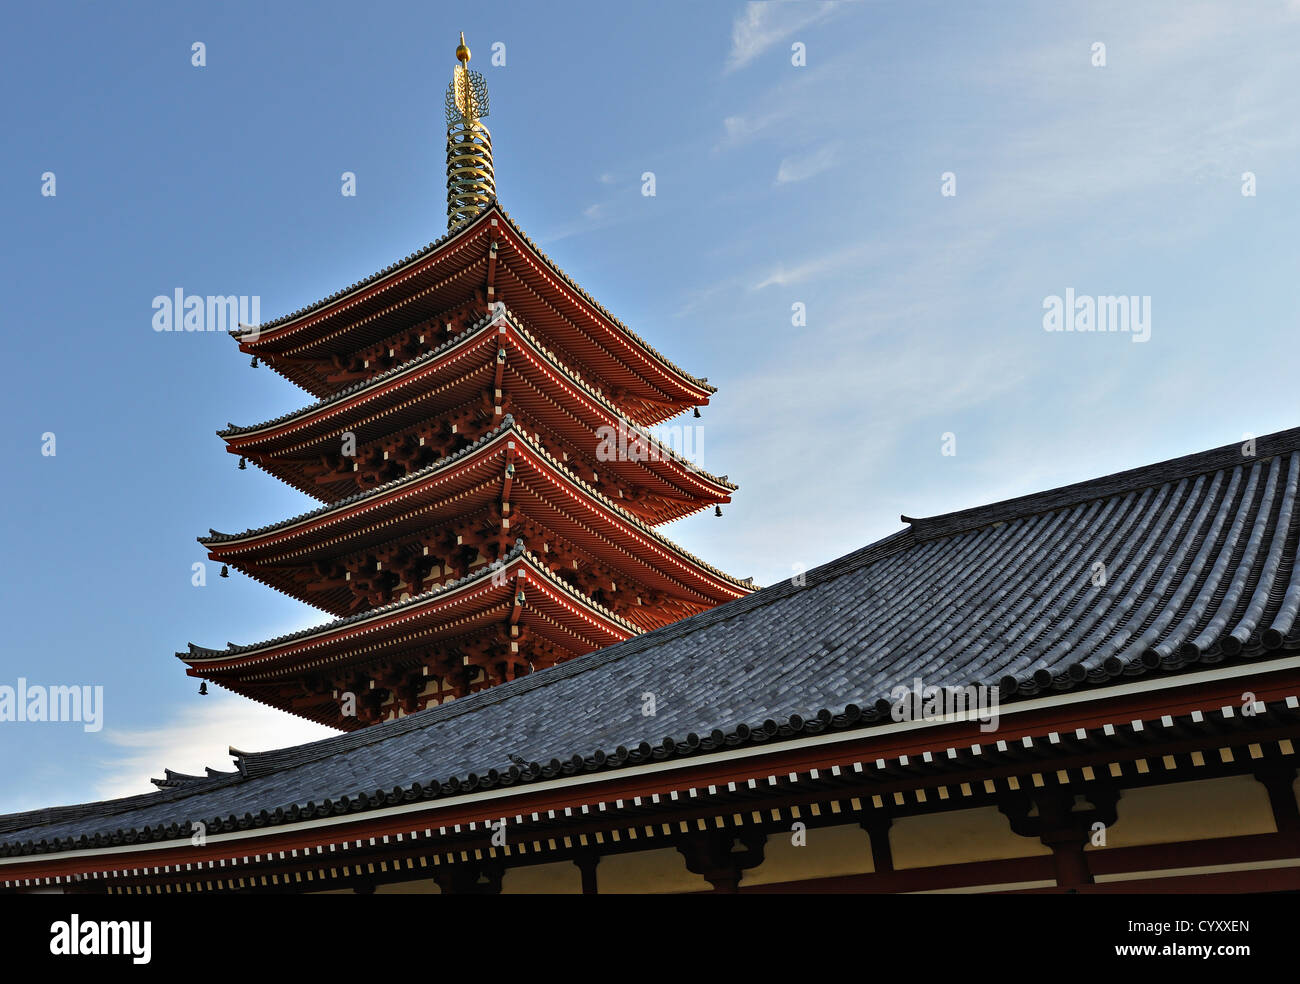 The pagoda at Senso-ji temple, Asakusa, Tokyo, Japan Stock Photo